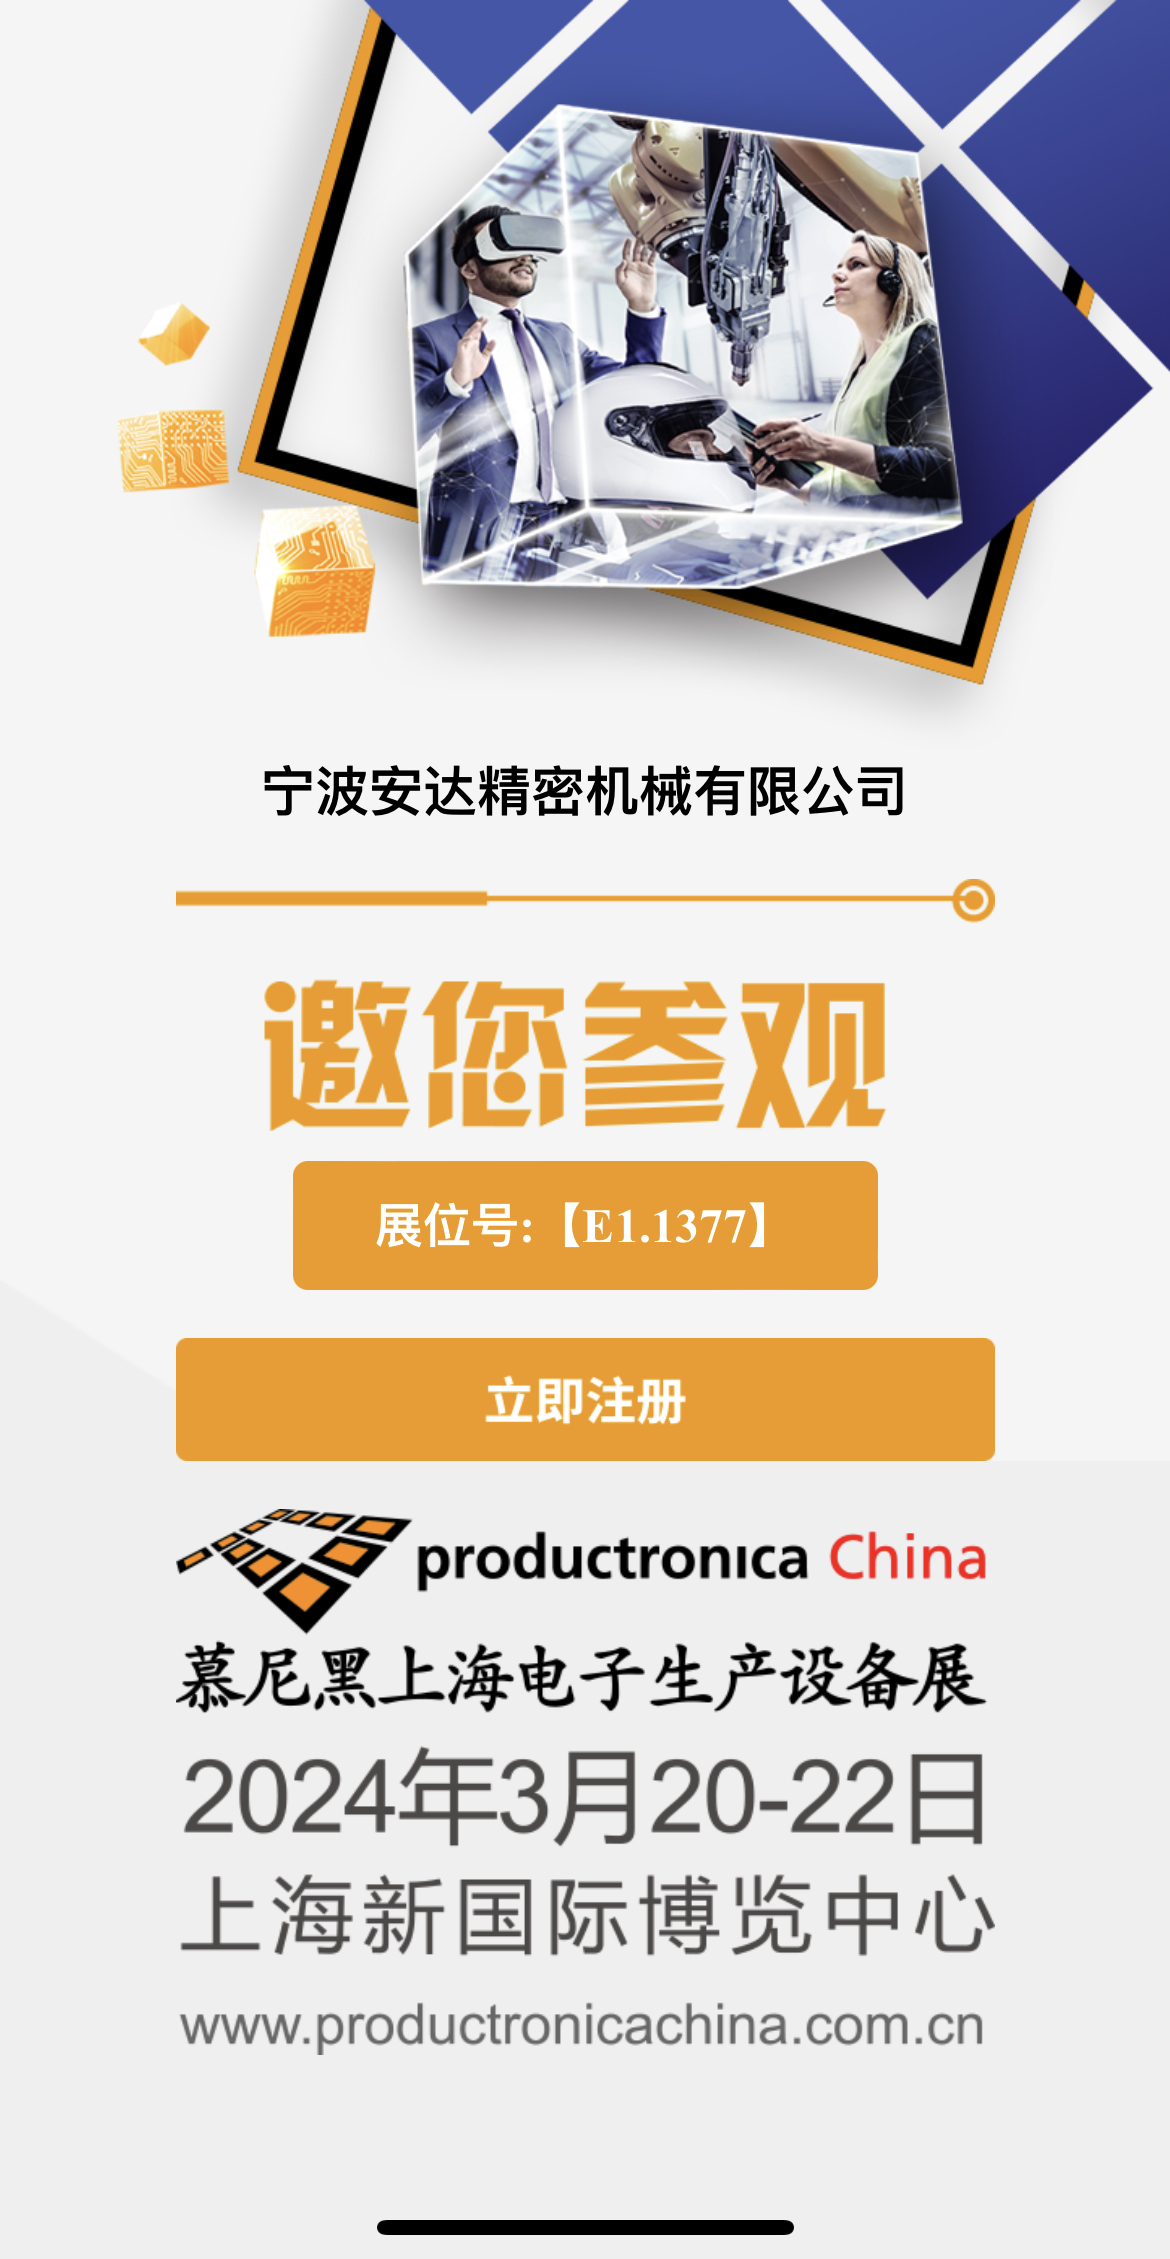 YABO.COM官方网站丨中国有限公司官网将于2024年3月20日至3月22日参加慕尼黑上海电子生产设备展